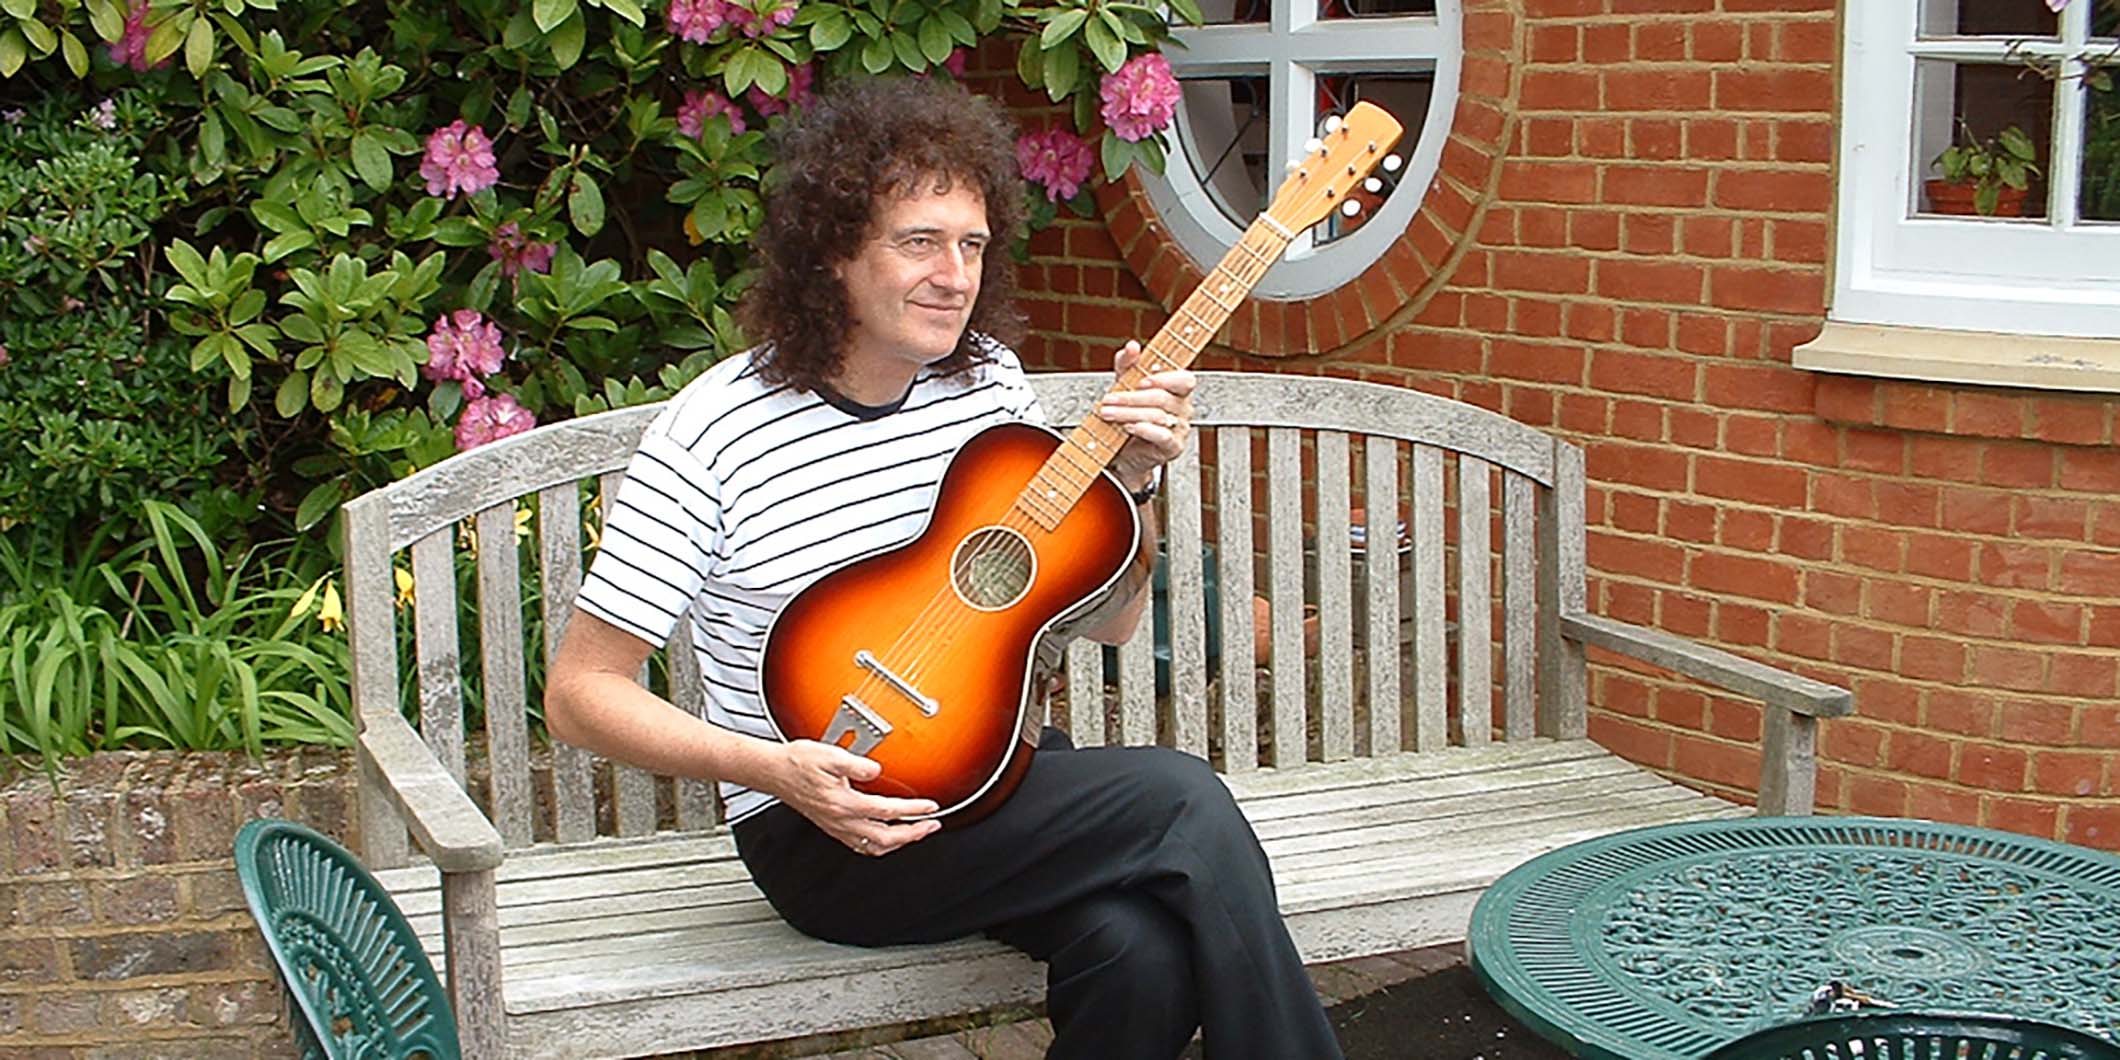 ブライアン・メイが初めて手にしたギターの修復作業を、ビルダーのアンドリュー・ガイトンが語る